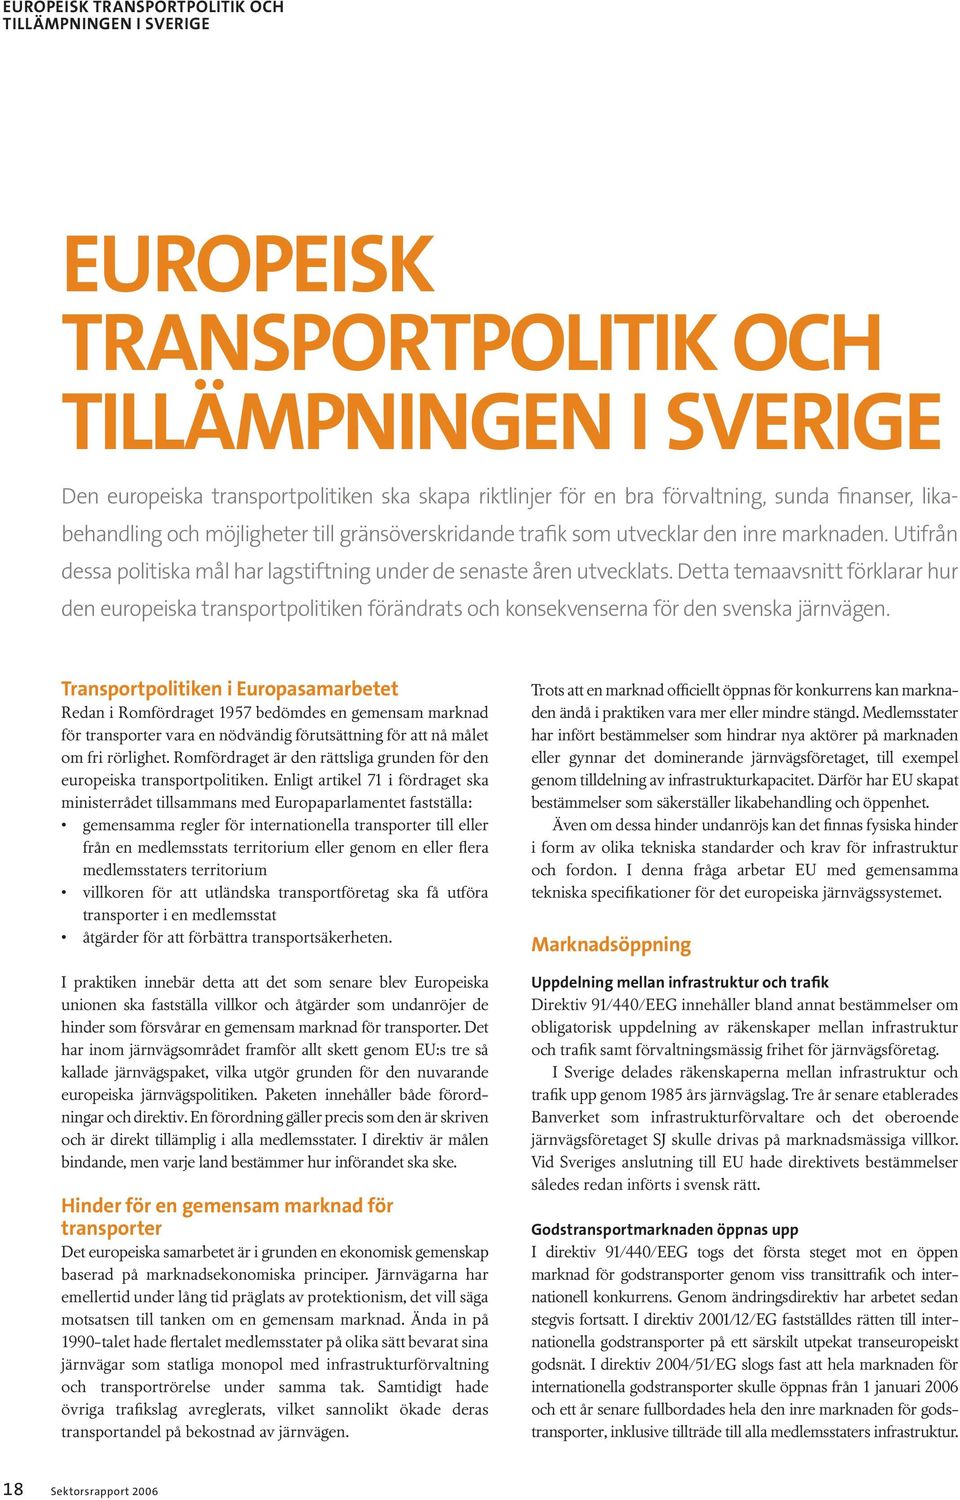 Detta temaavsnitt förklarar hur den europeiska transportpolitiken förändrats och konsekvenserna för den svenska järnvägen.